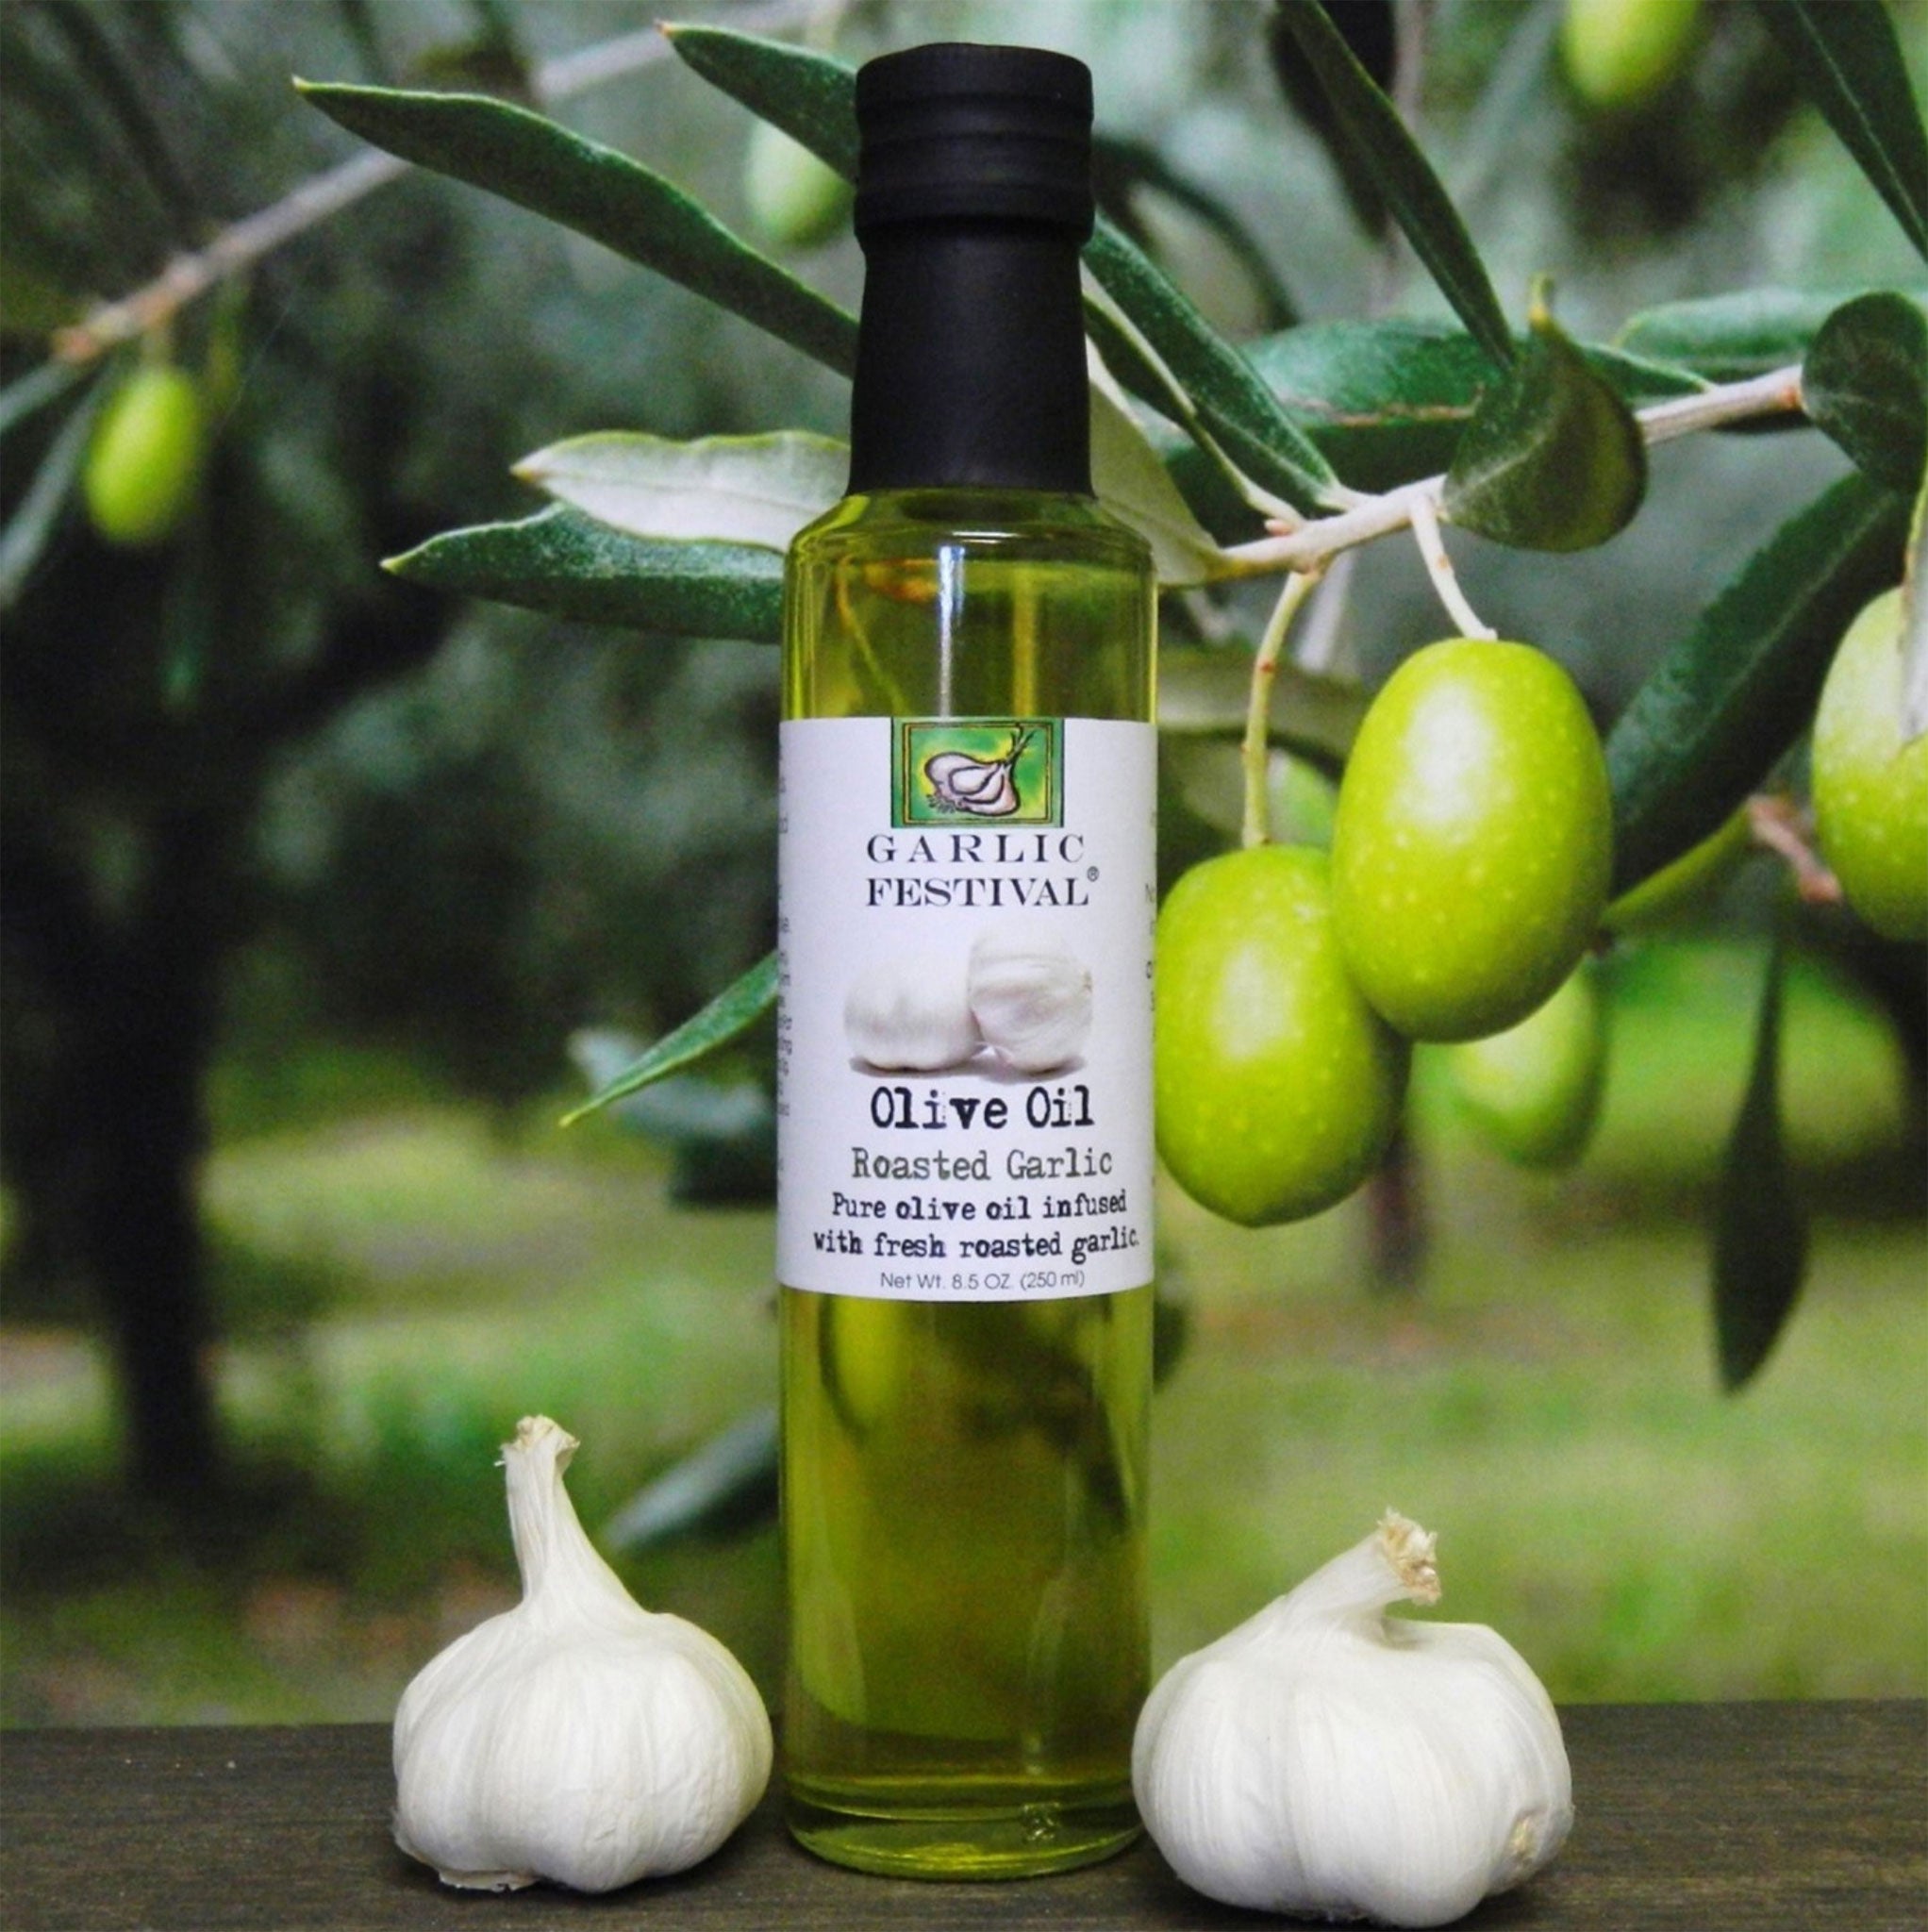 Garlic Festival Roasted Garlic Olive Oil - 8.5 oz. (250ml)